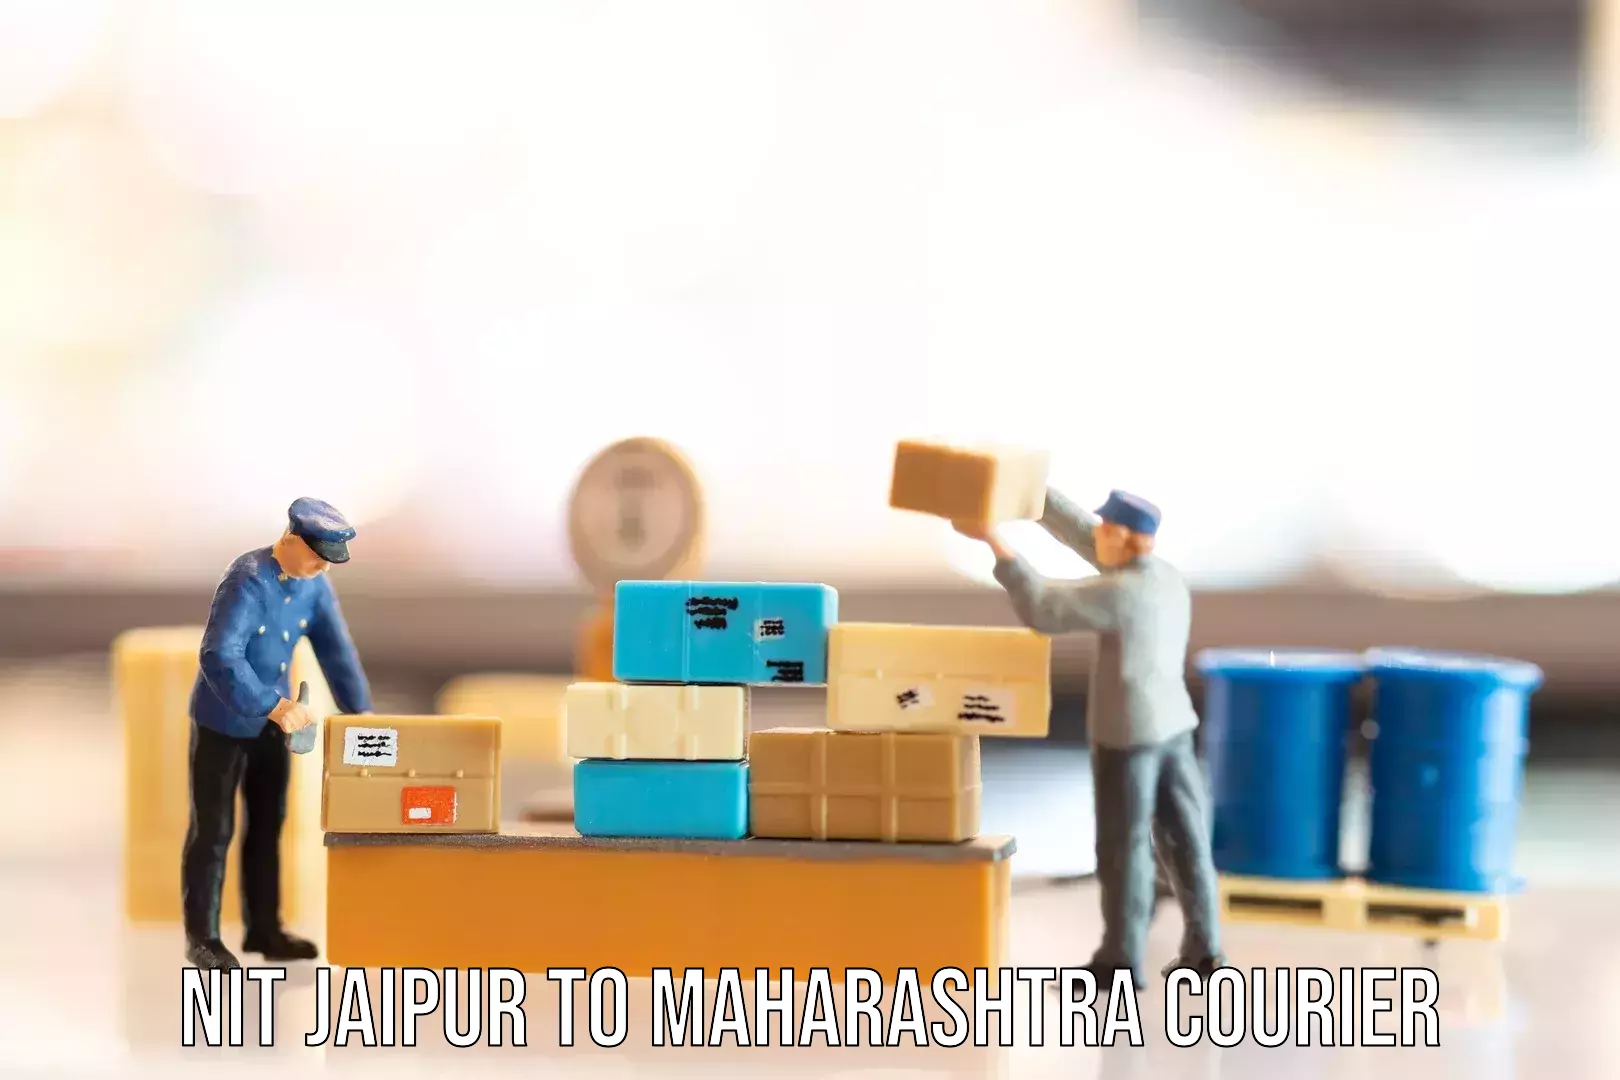 Luggage transport service NIT Jaipur to Maharashtra